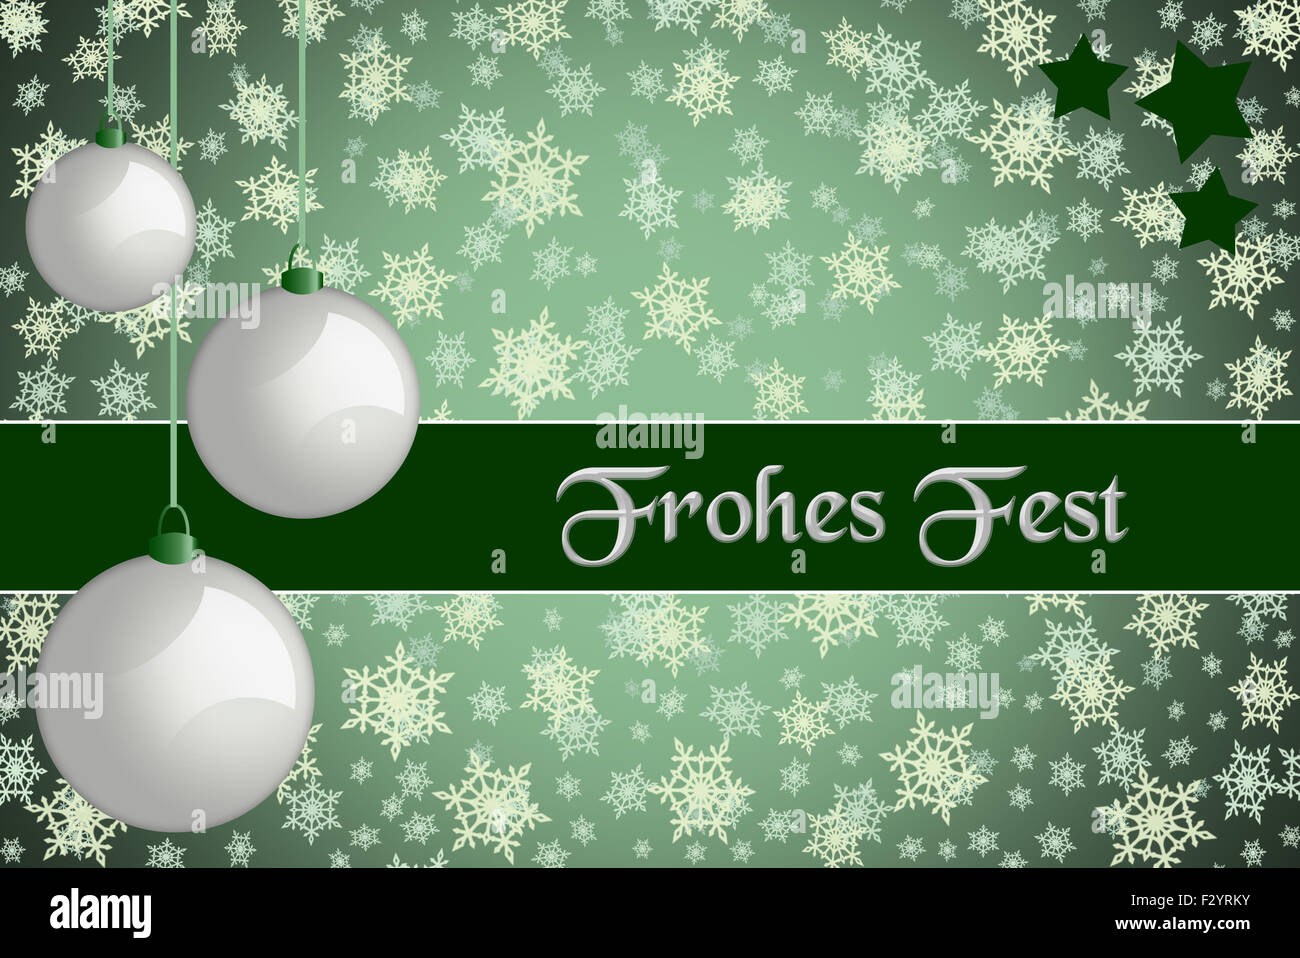 Natale biglietto di auguri. "Frohes Fest" di colore verde Natale carta con retro bianco baubles e il simbolo del fiocco di neve sullo sfondo. Foto Stock